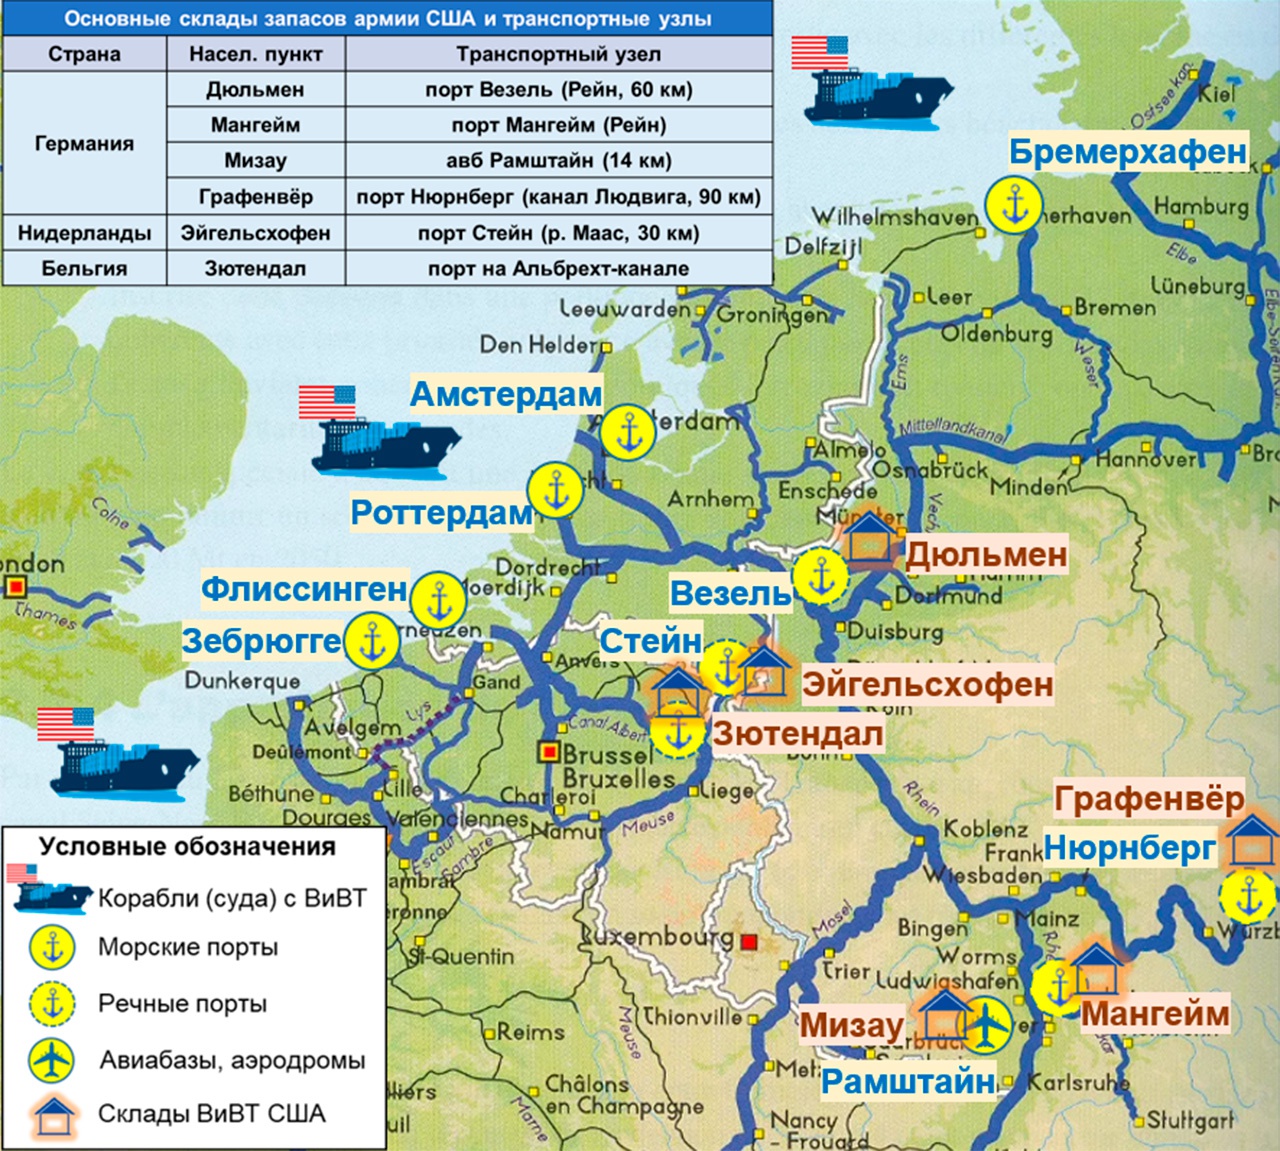 Привязка складов США к морским портам и внутренним водным путям Европы.